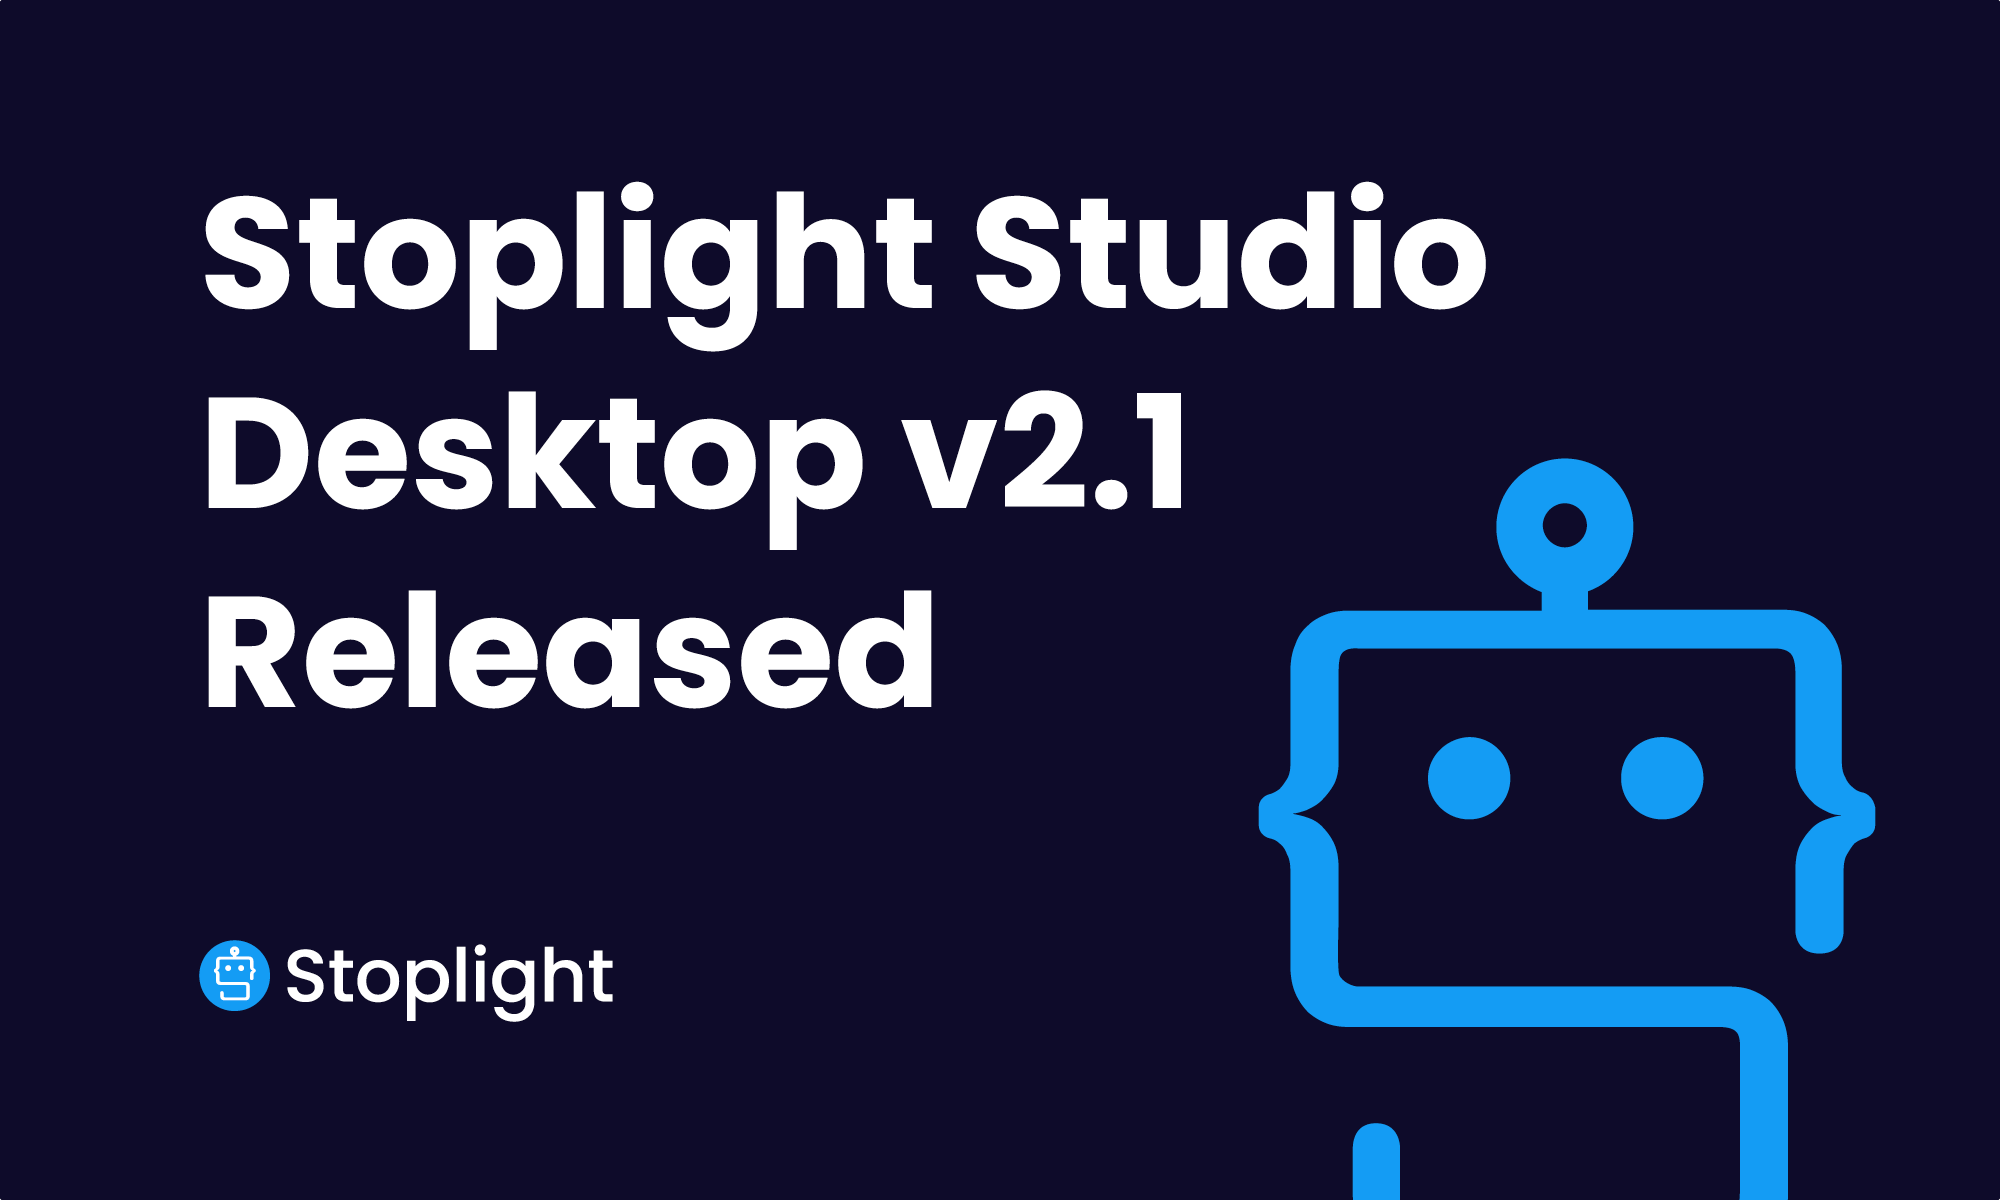 Stoplight Studio Desktop v2.1 Released